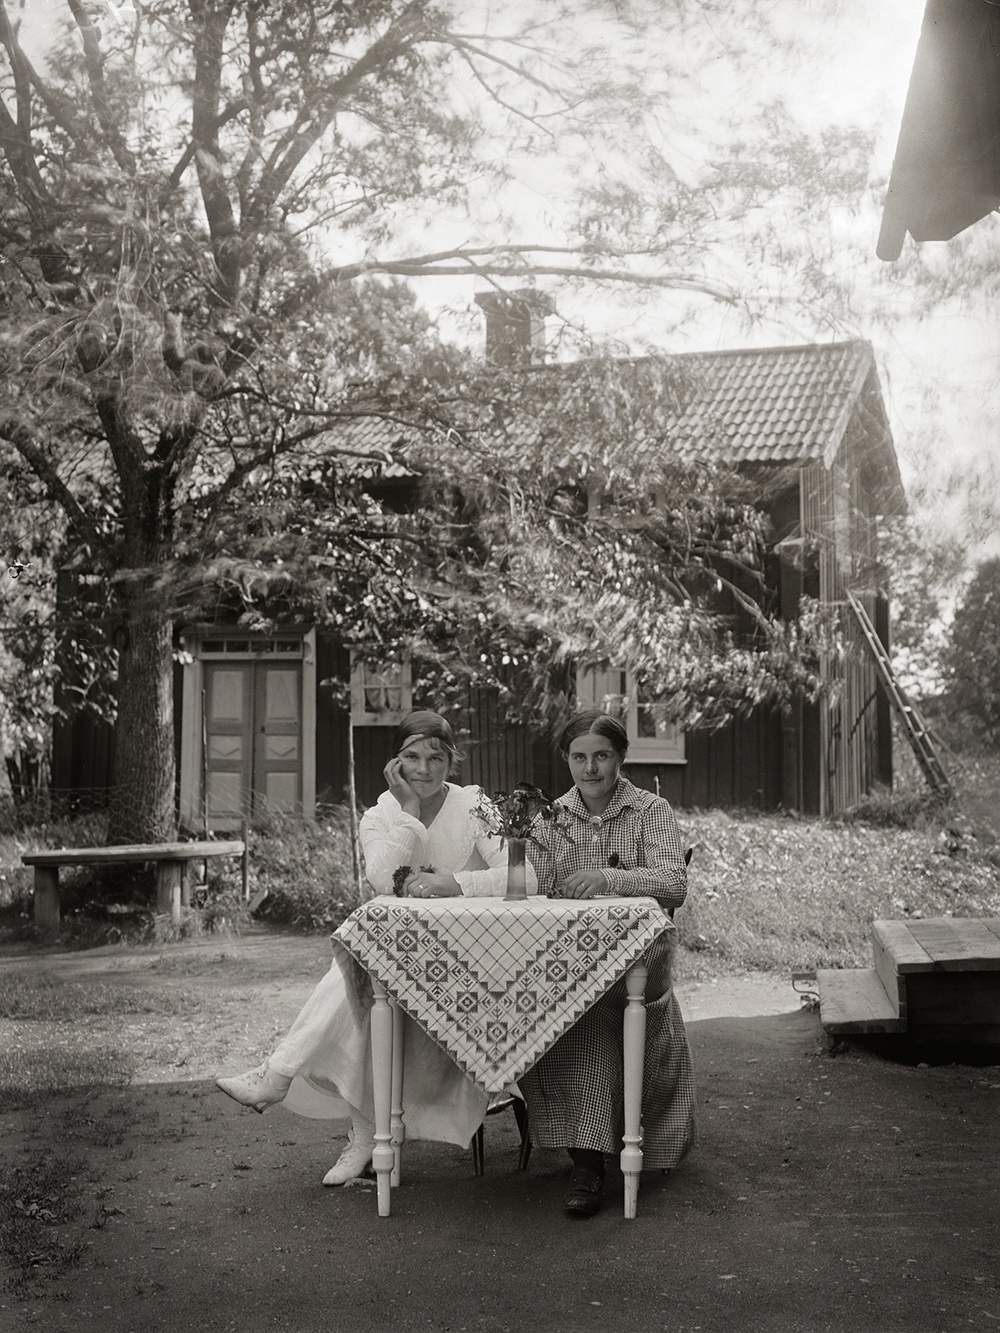 Gårdsplanen hos Axel Karlssons i Forsby, Simtuna socken.
1917-1922
Foto: John Alinder/Upplandsmuseet